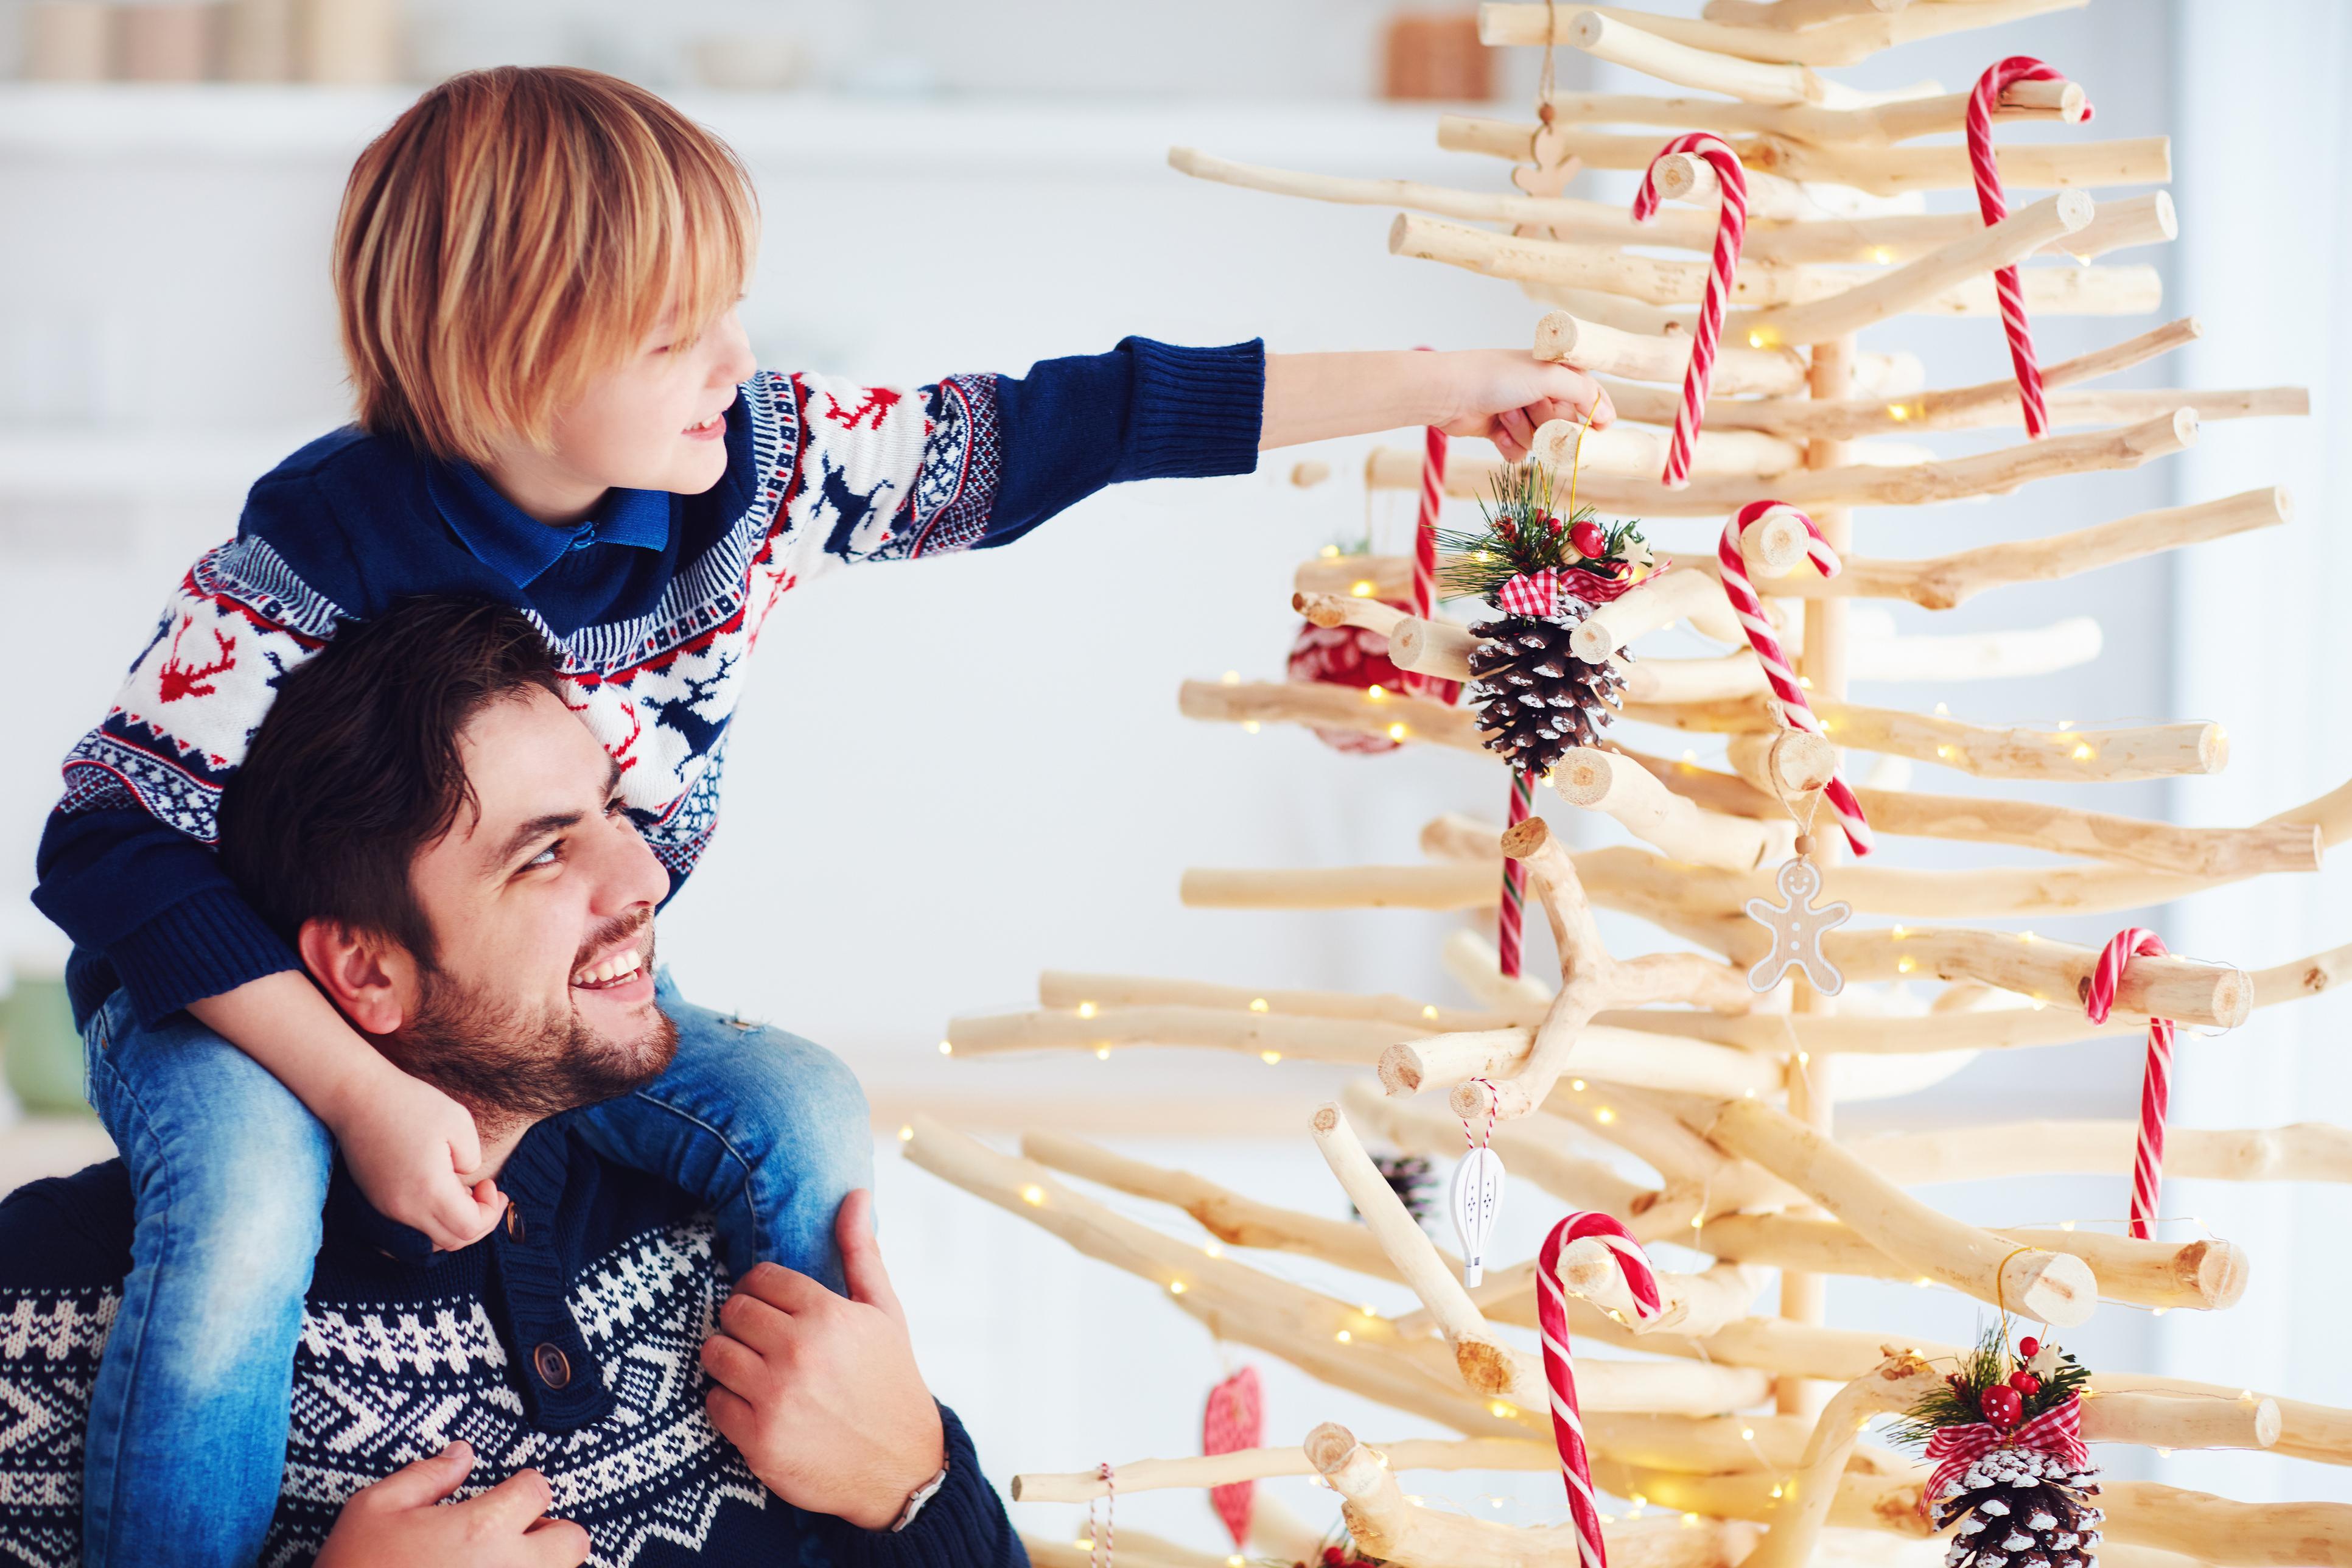 Mit unkonventionellen Alternativen zum Weihnachtsbaum lässt sich das Fest auf eine frische und witzige Art feiern.